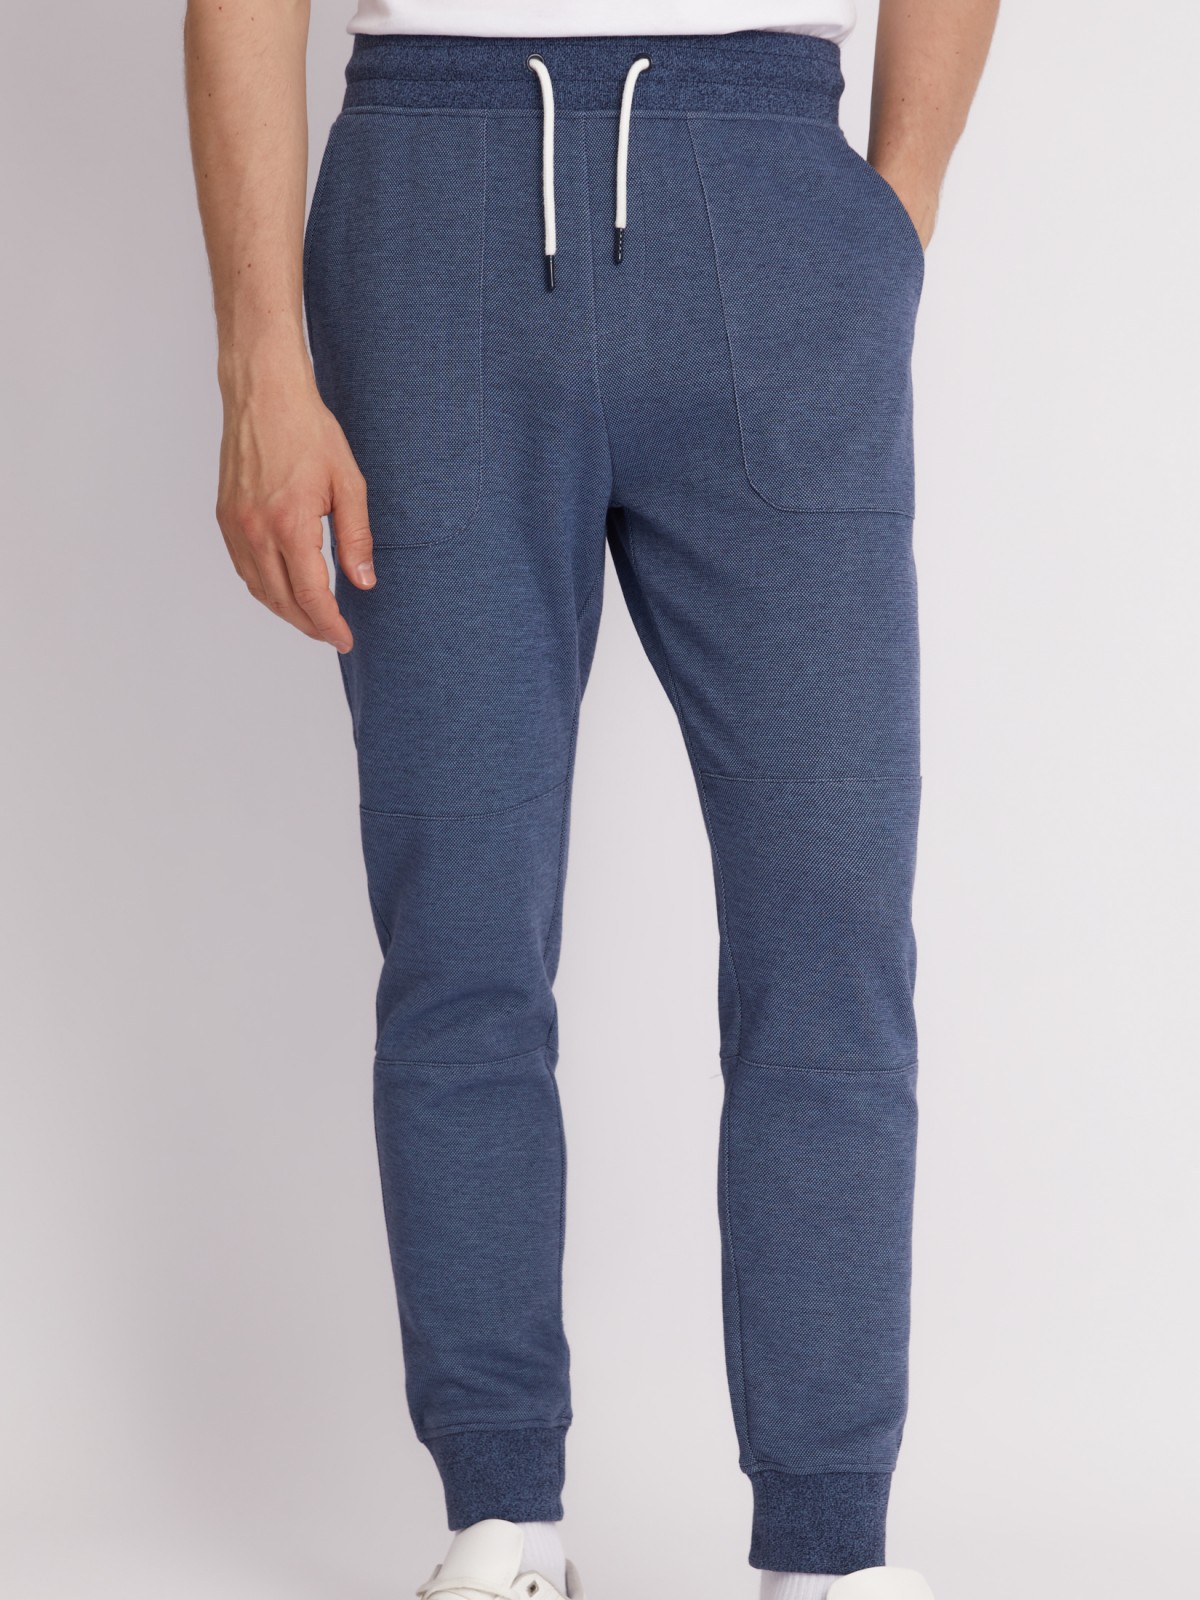 Трикотажные брюки-джоггеры в спортивном стиле zolla 213317604053, цвет голубой, размер S - фото 3